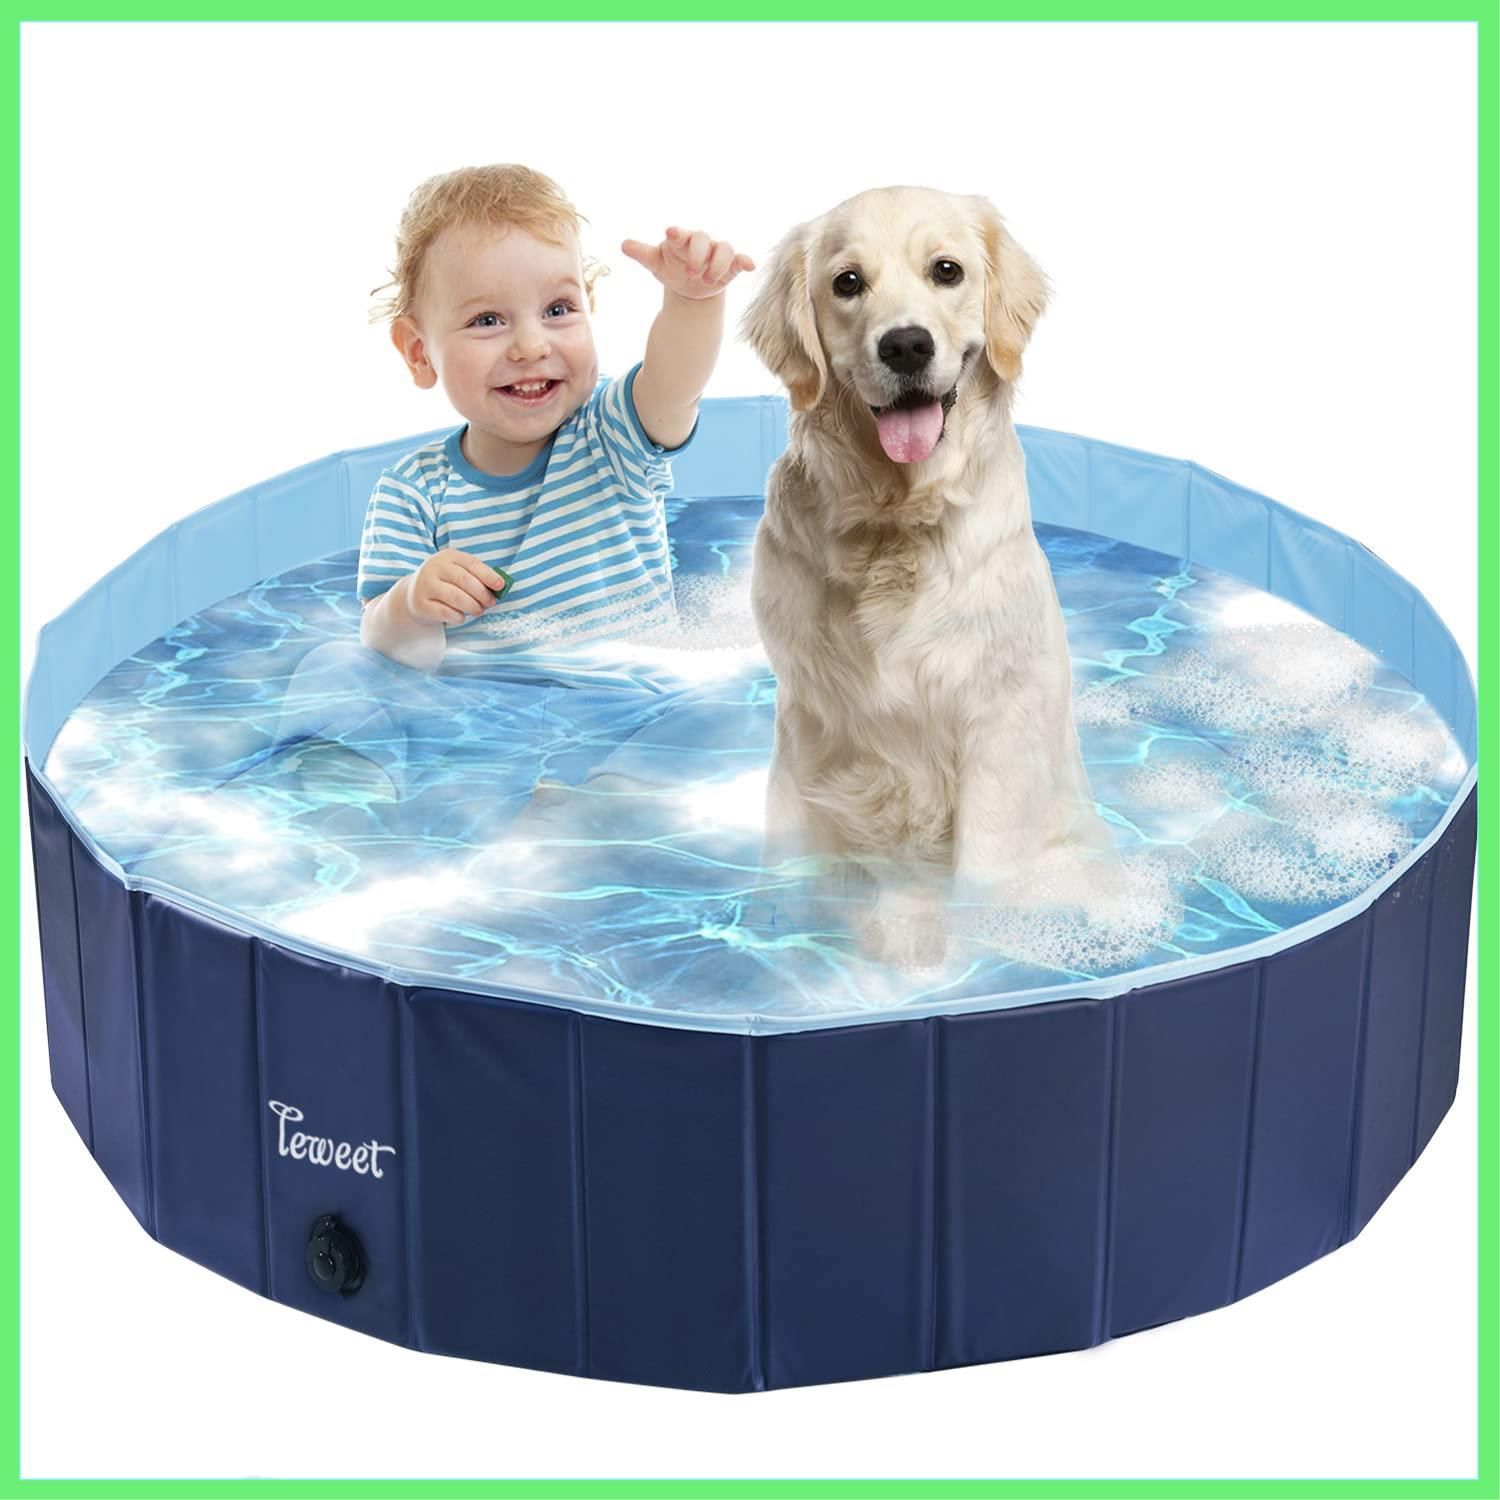 ◇Leweet プール 子供用 ペット用 犬用プール 子供用プール ペット用